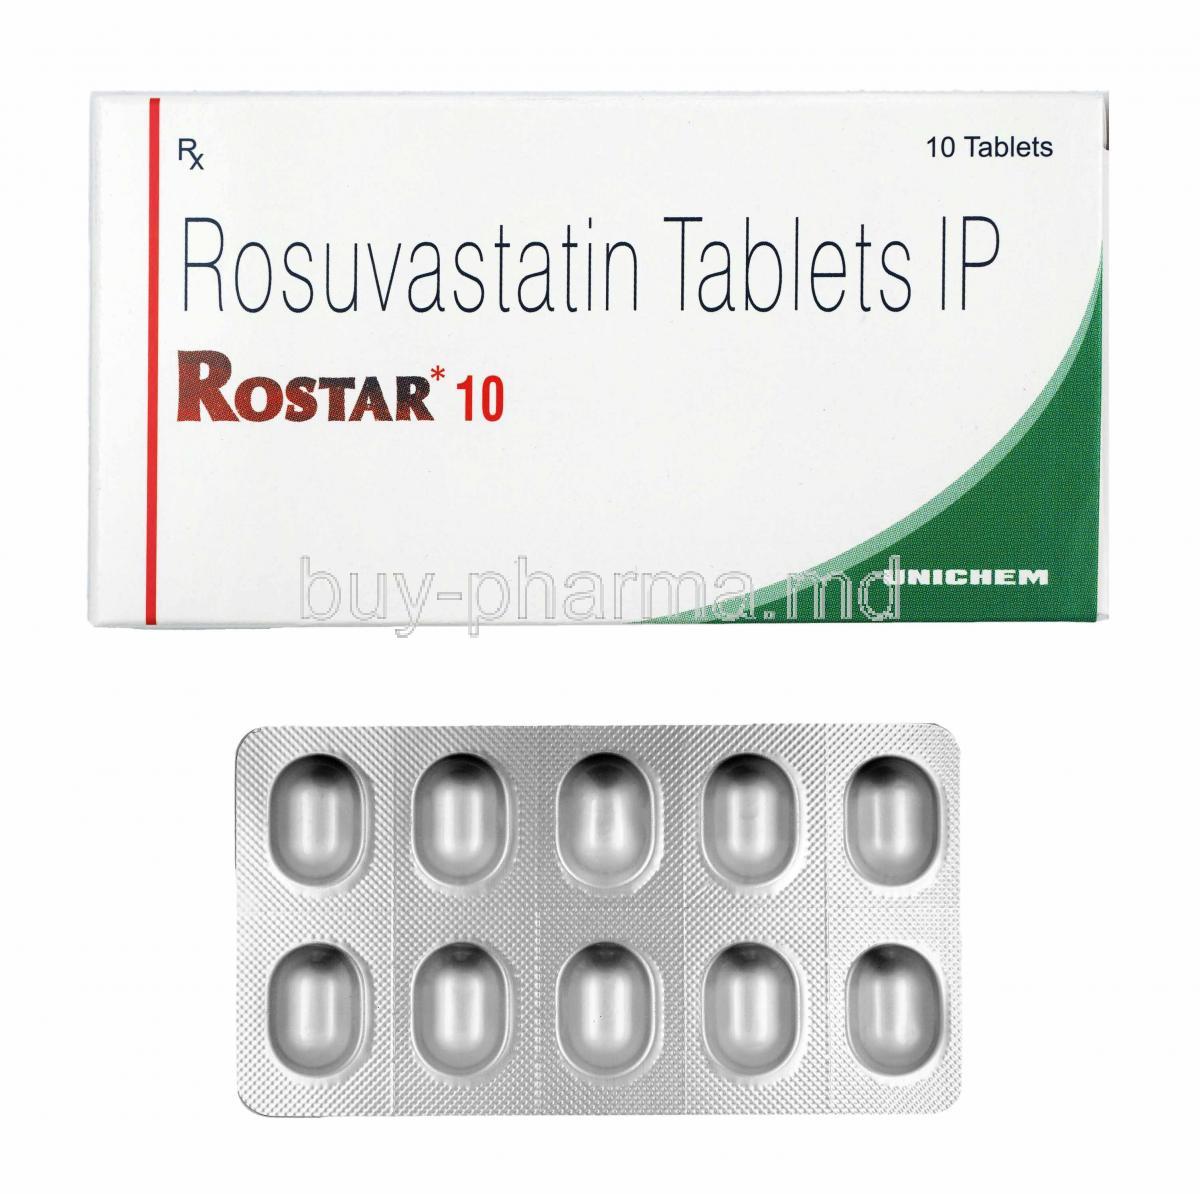 Rostar, Rosuvastatin 10mg box and tablets